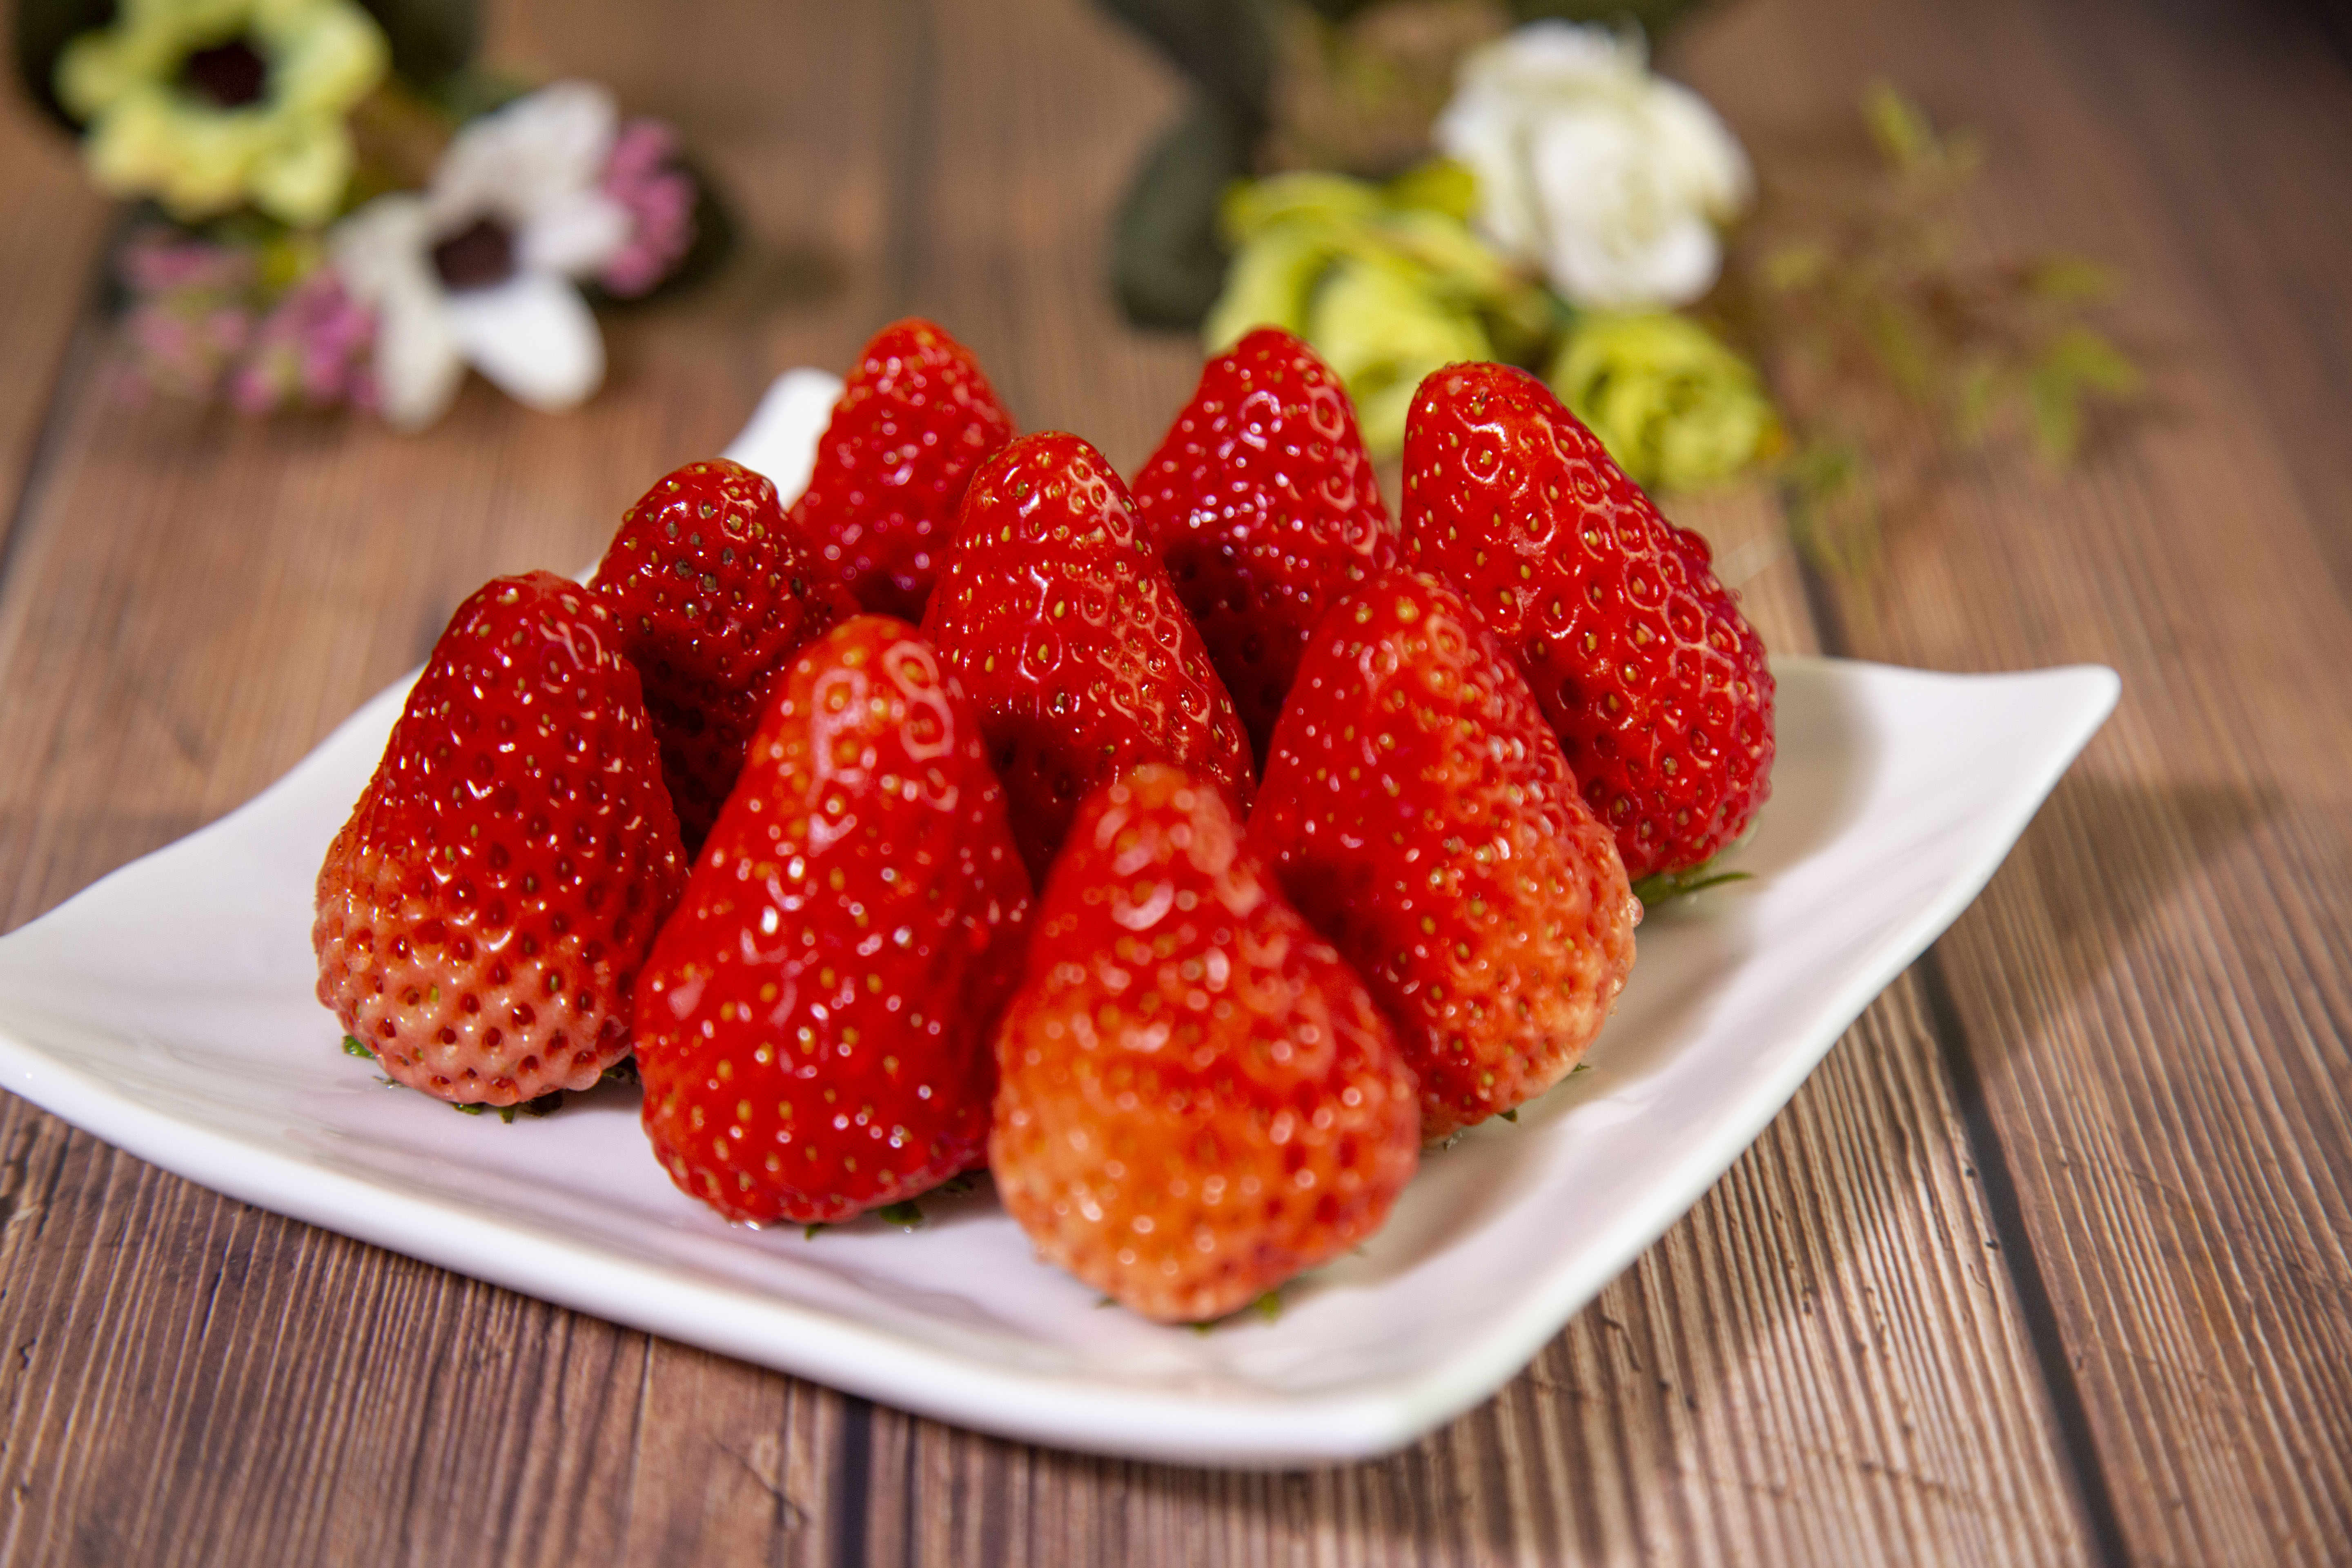 白色背景白盘子里的红大草莓与浆果上的水滴 库存图片. 图片 包括有 点心, 牌照, 午餐, 有机, 降低 - 158837717